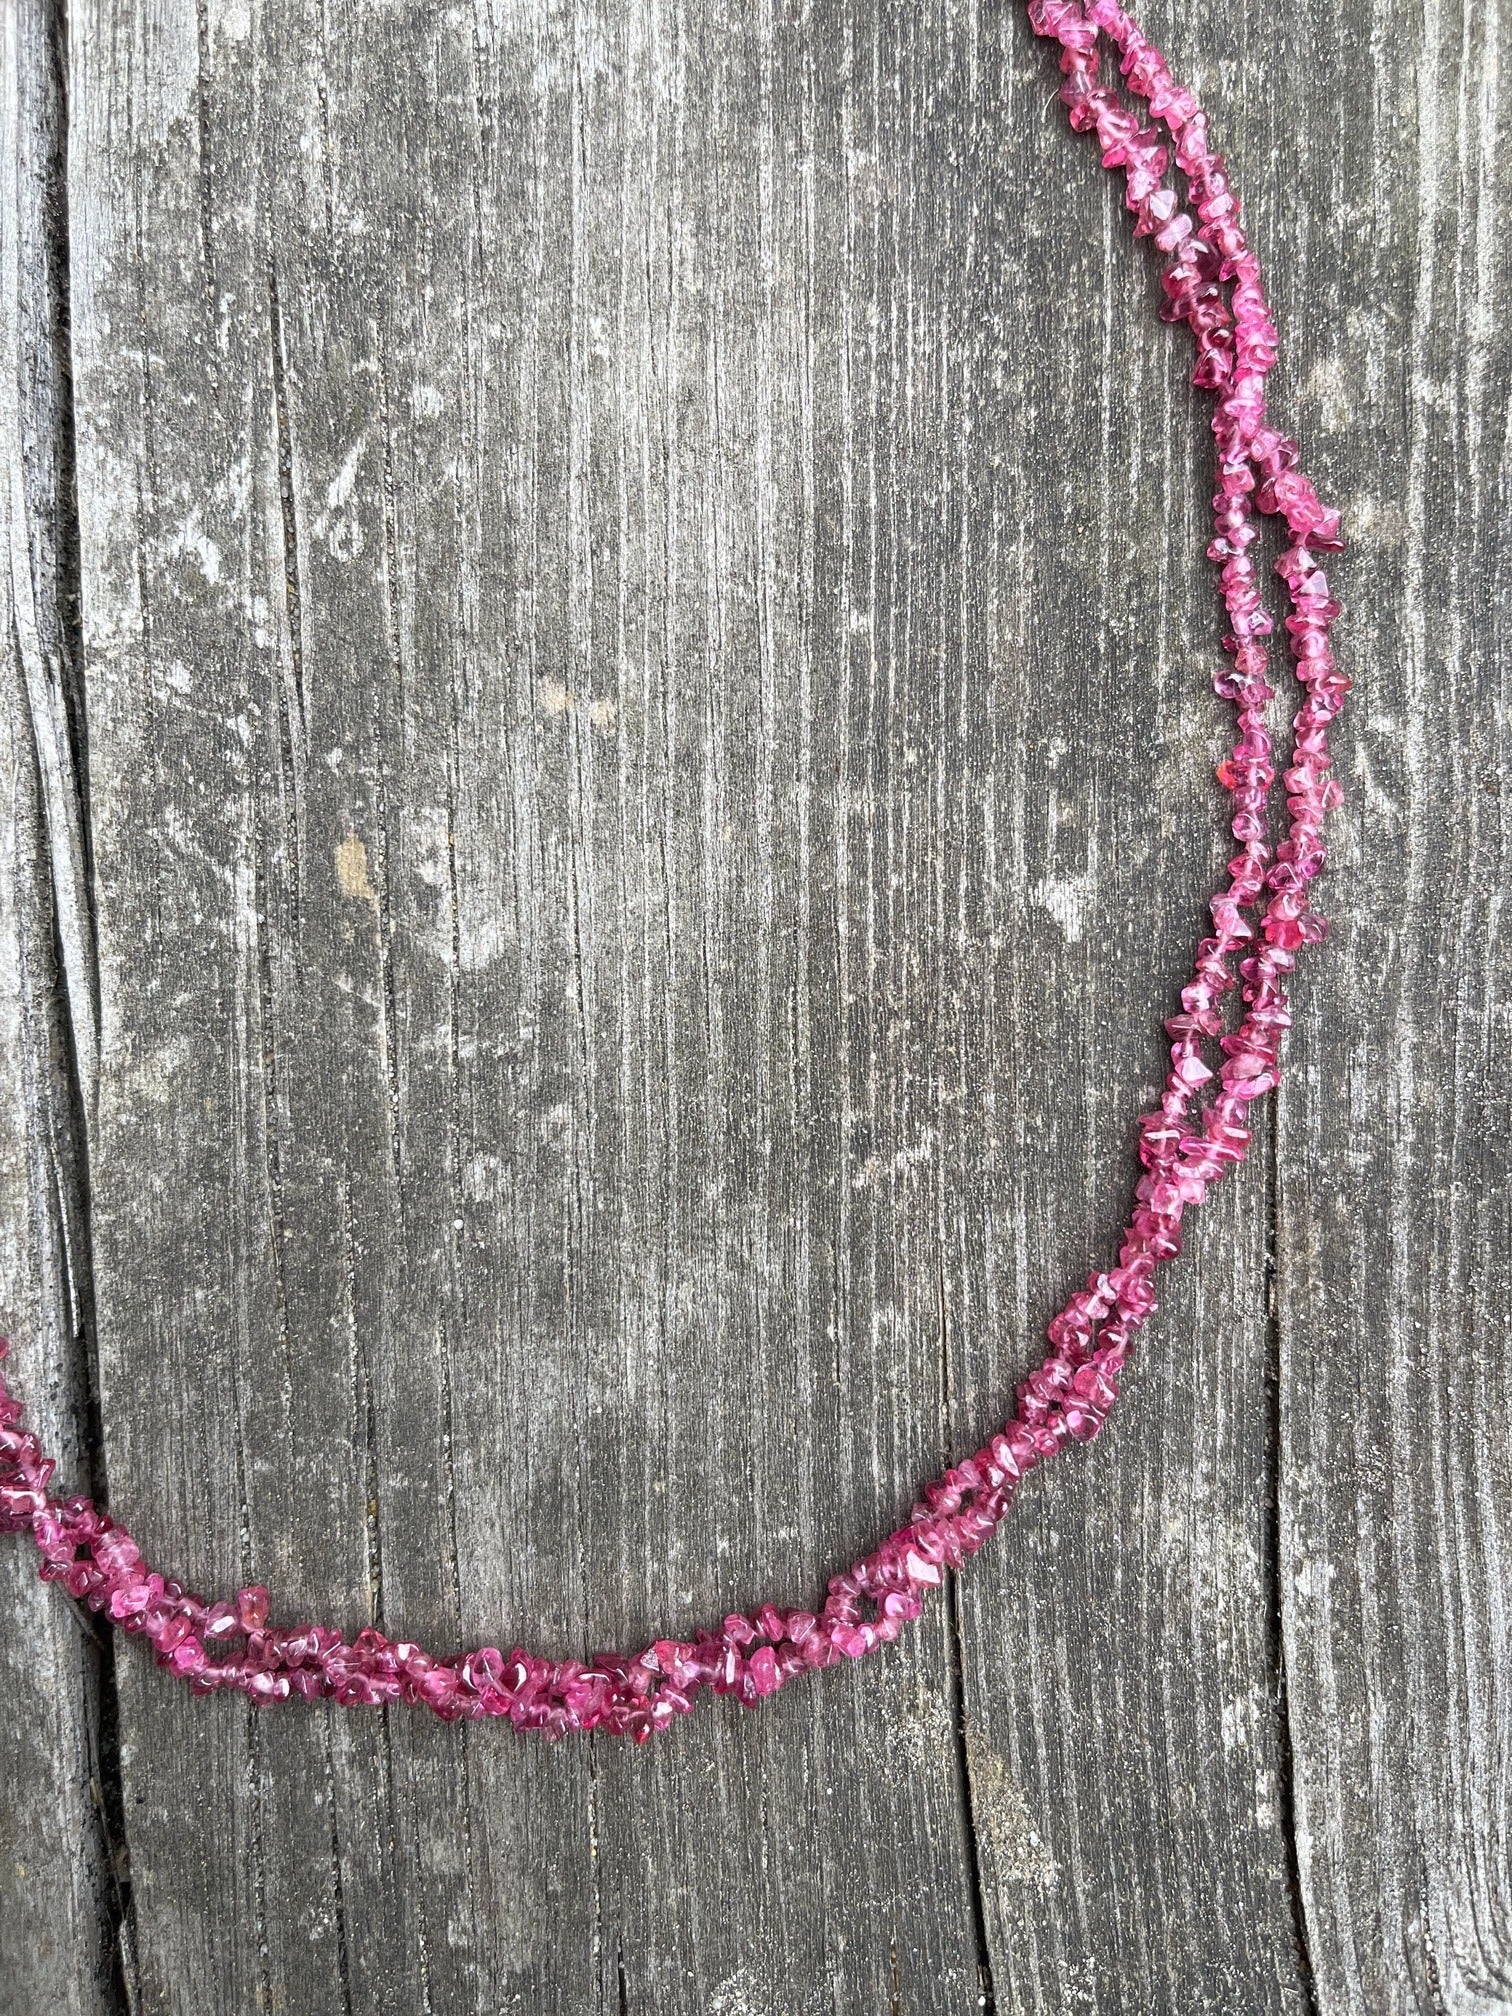 Rote Spinell Halskette - Zweireihig